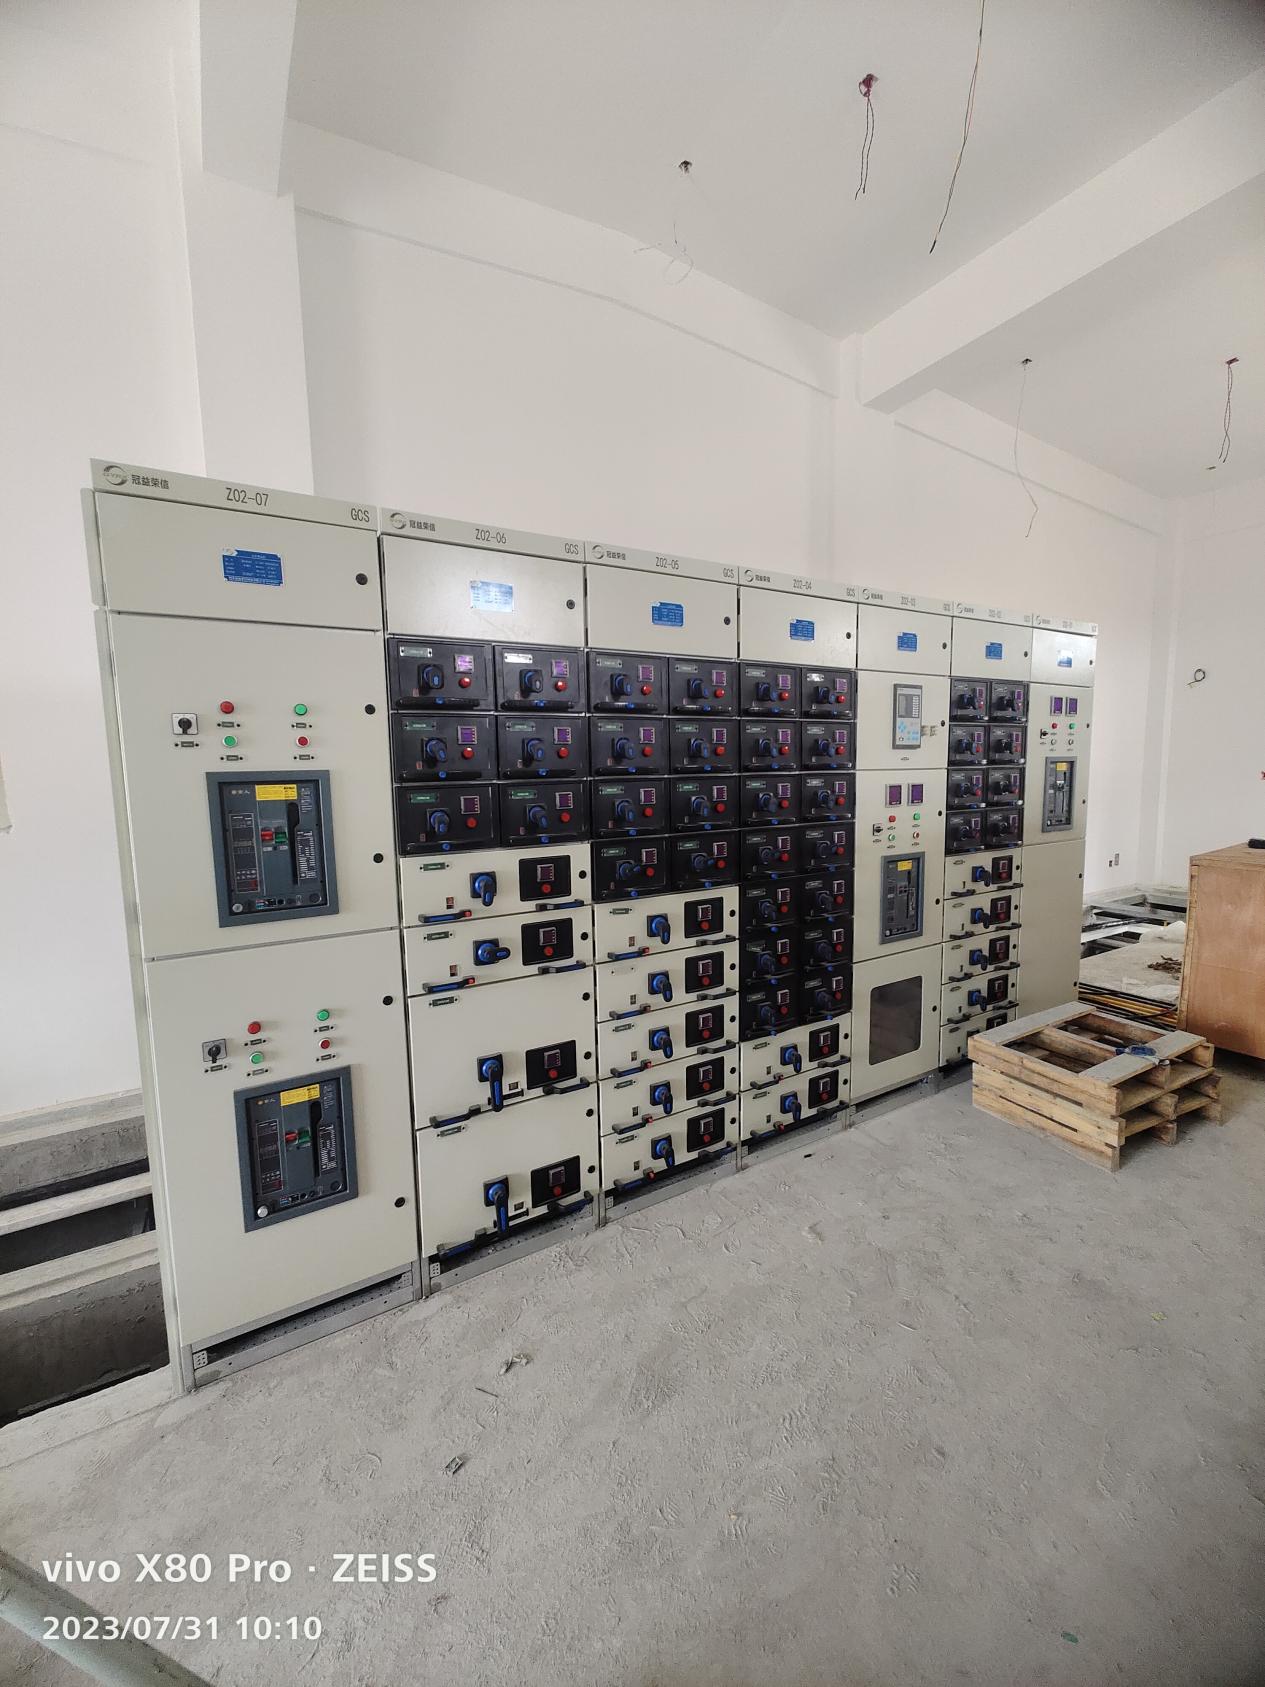 AM5-DB低压备自投装置  在河北冠益荣信科技公司洞庭变电站工程中的应用